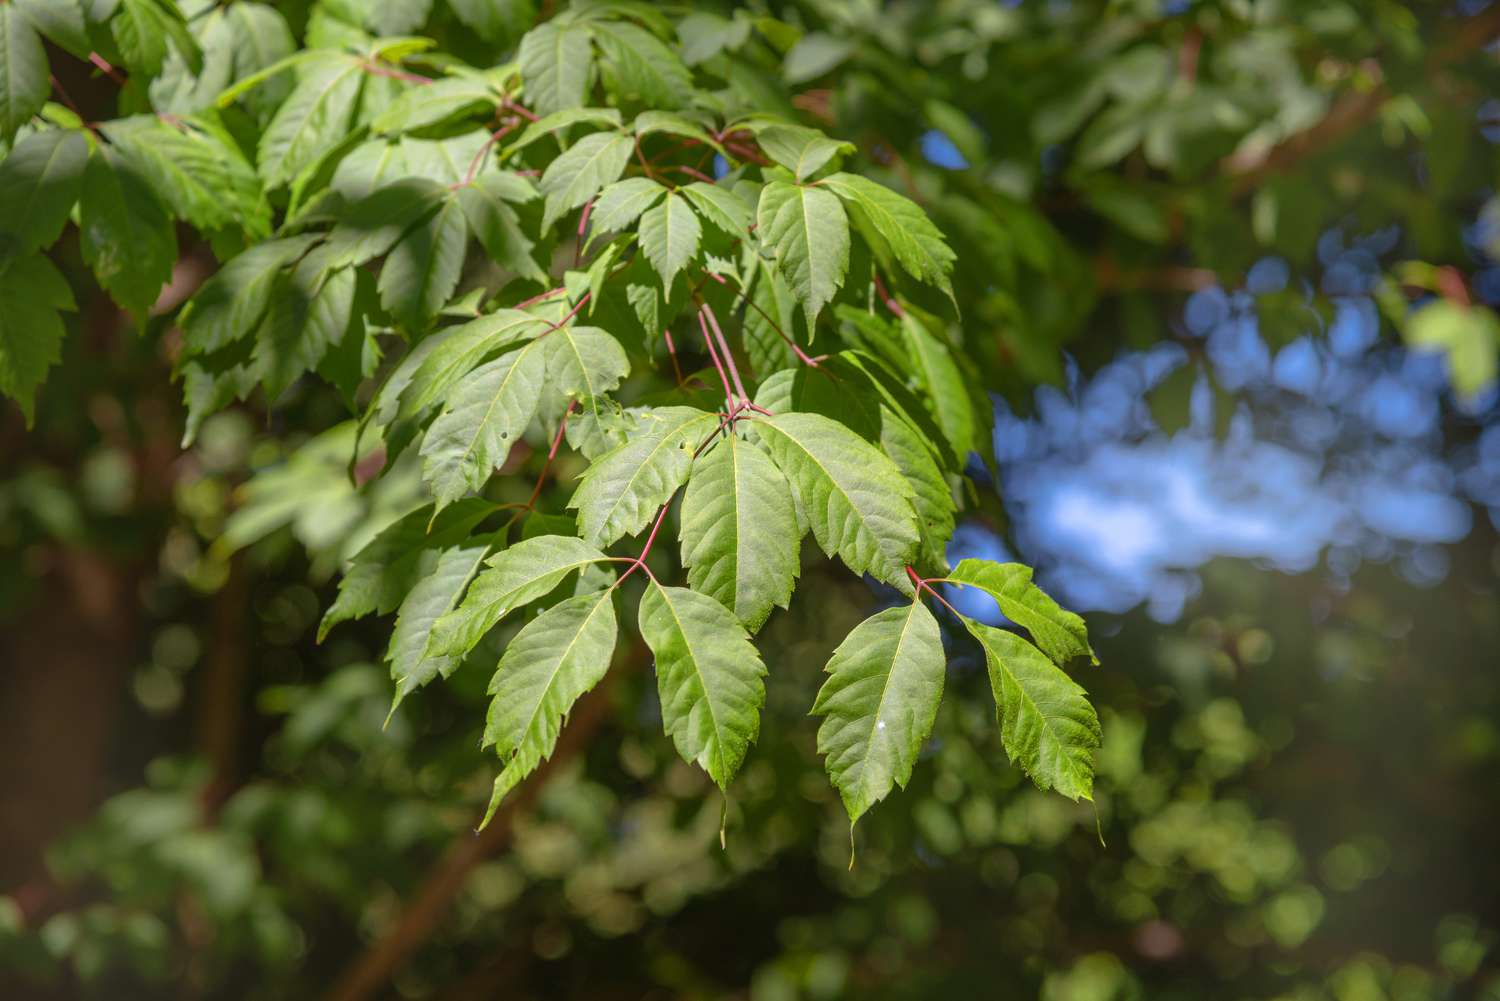 Weinblatt-Ahornbaumzweig mit dreiblättrigen Blättern an roten Stämmen